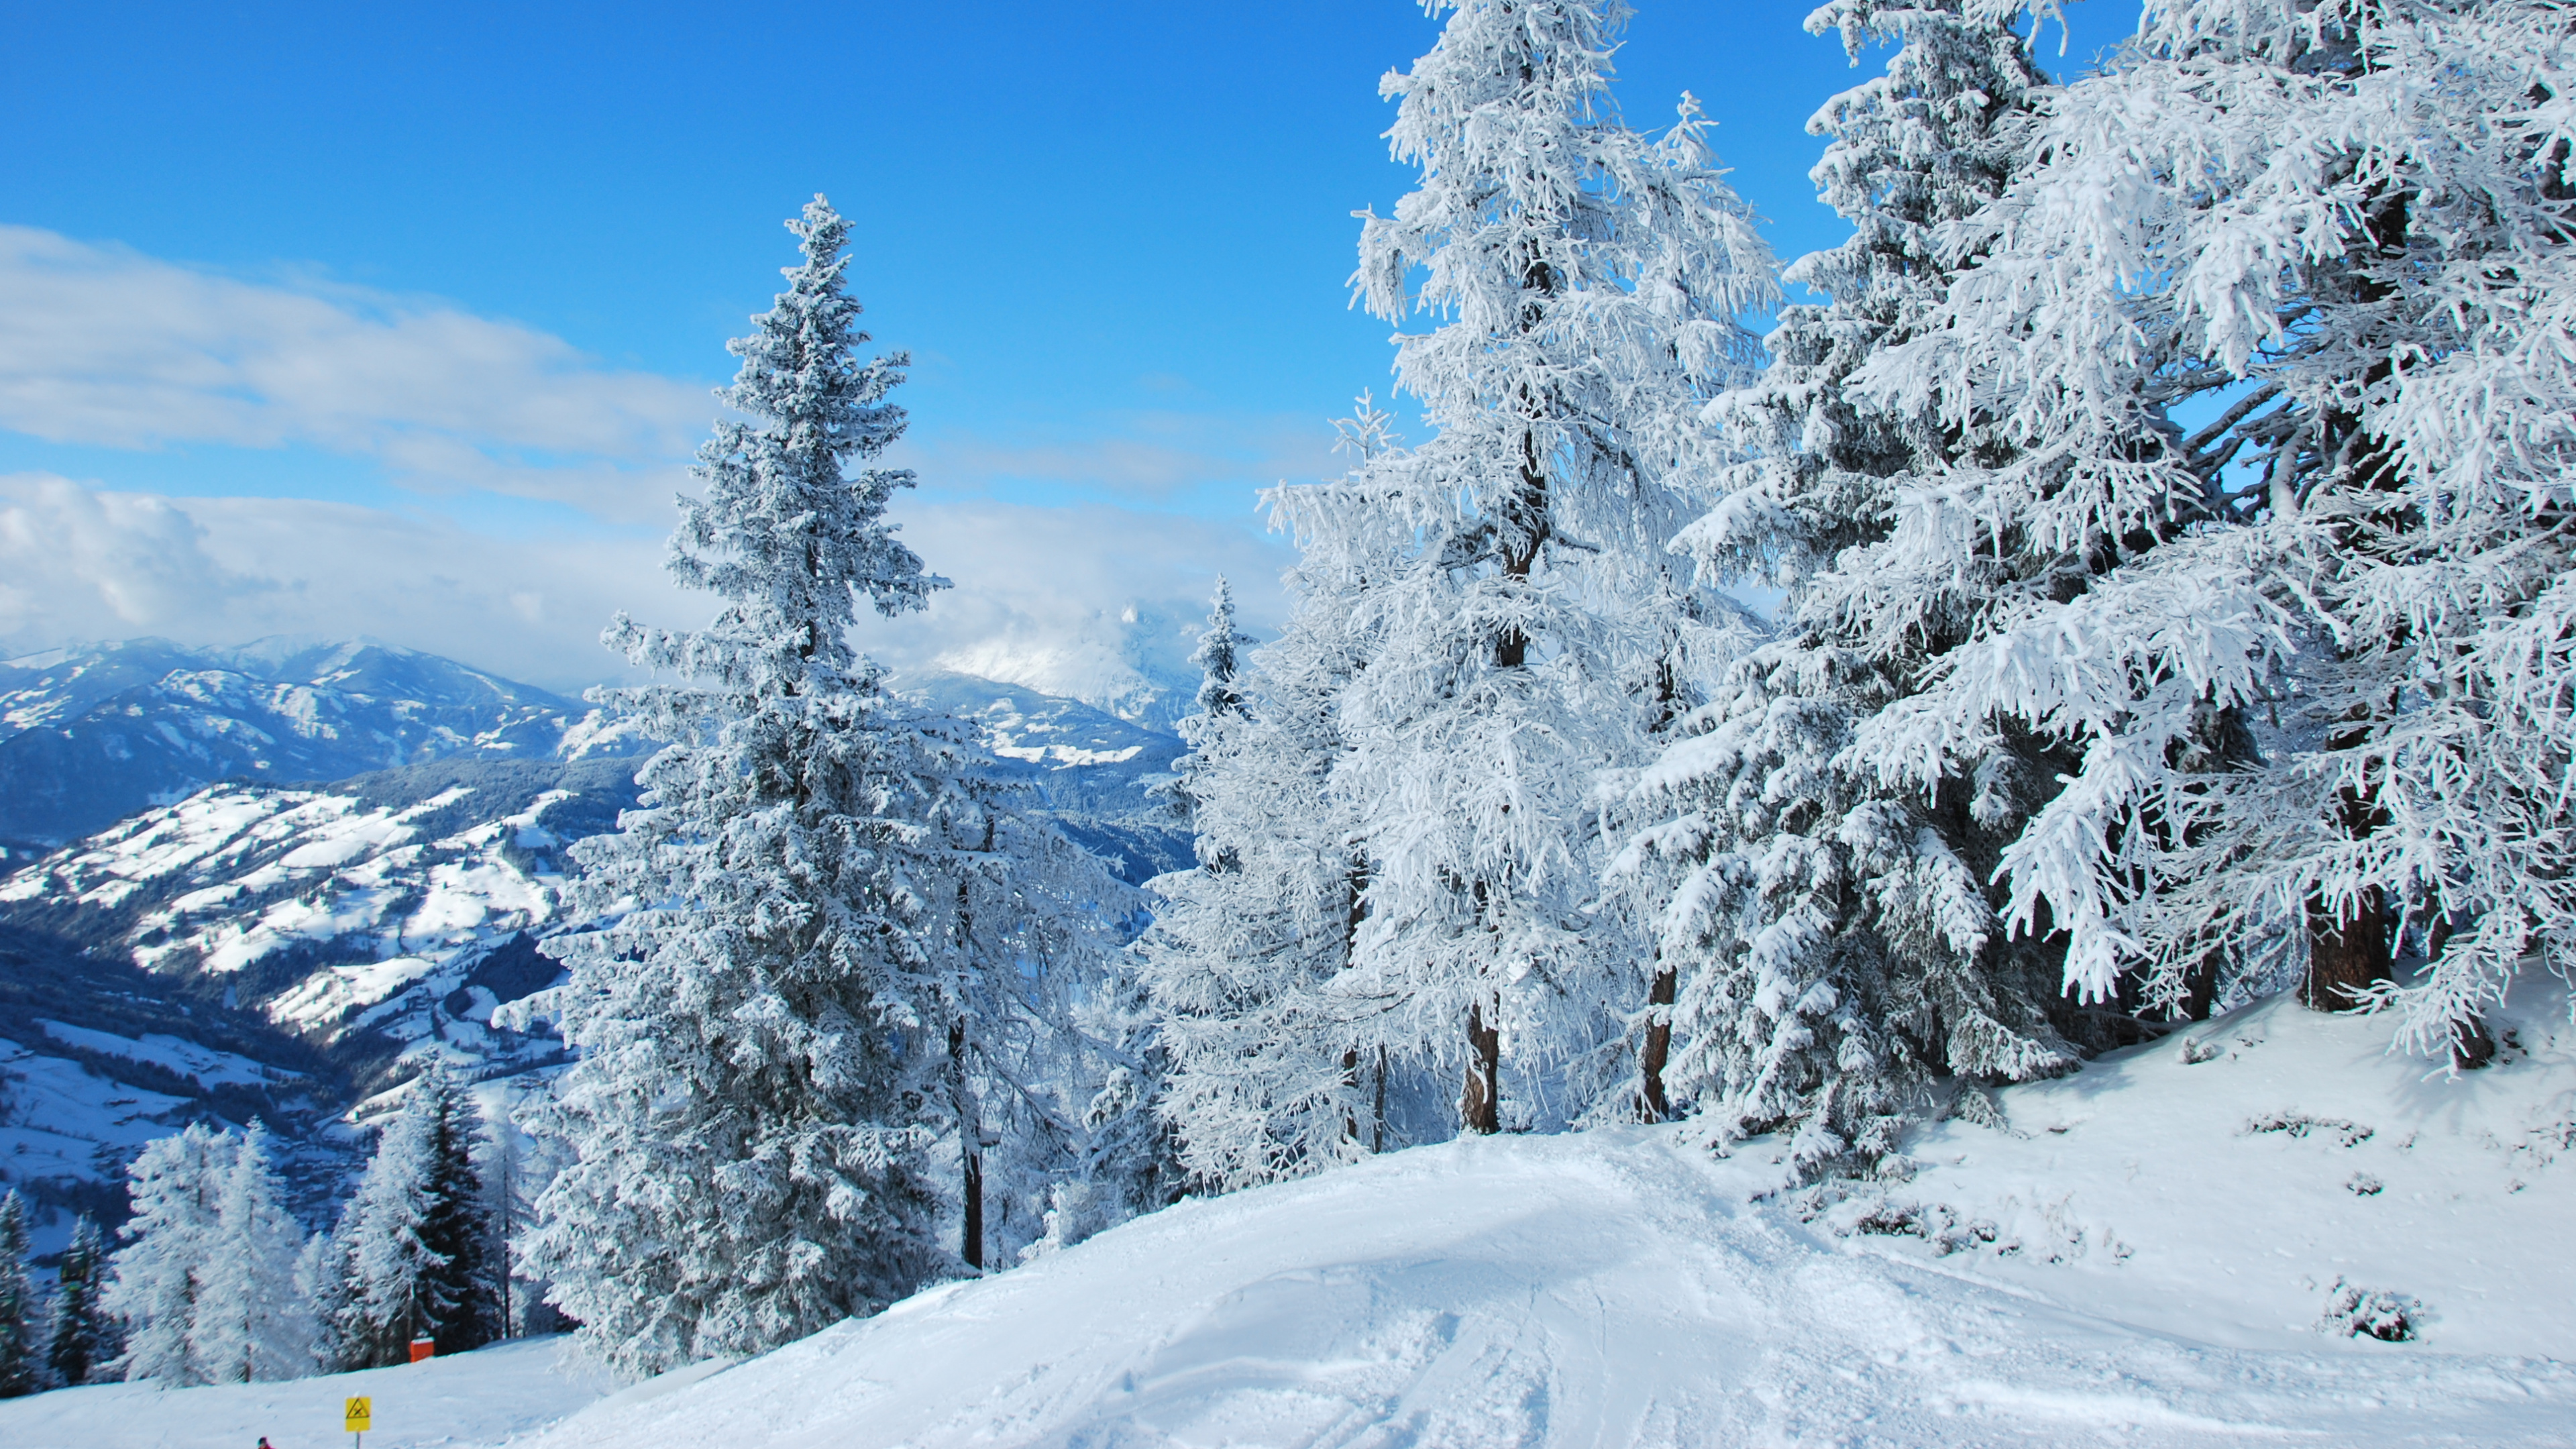 冬天, Fir, 木本植物, 滑雪胜地, 山脉 壁纸 3840x2160 允许